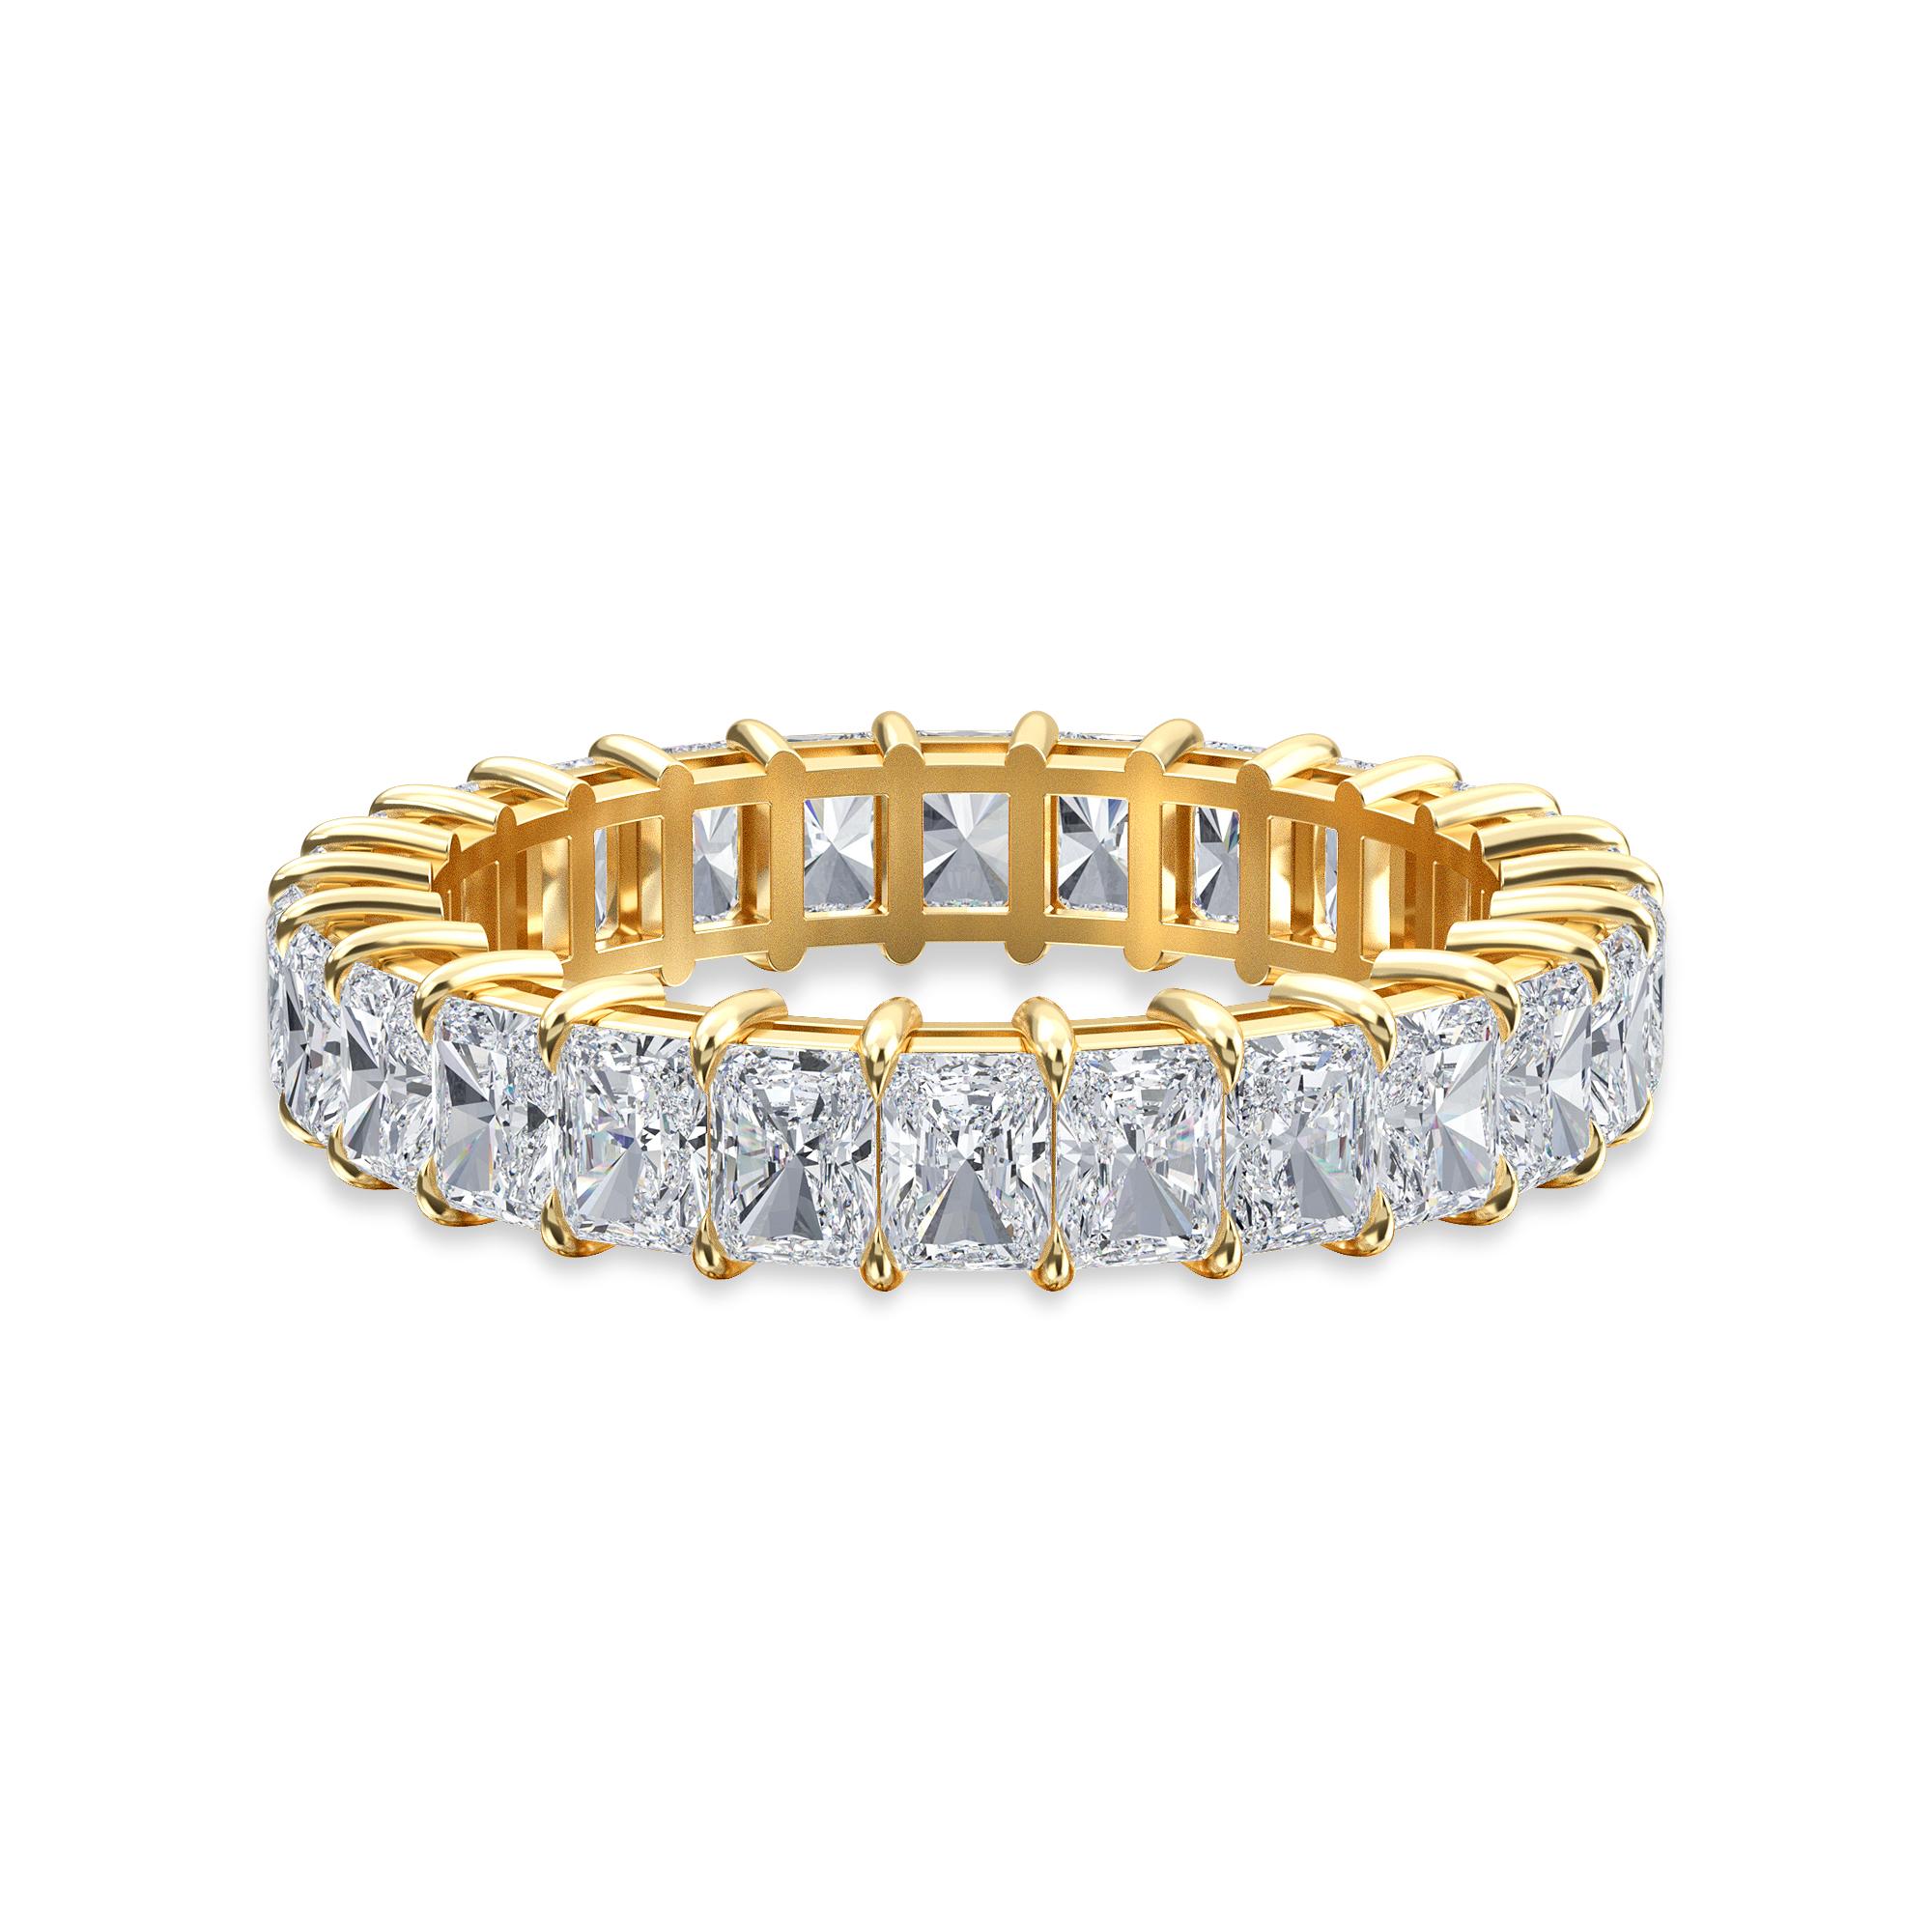 Dieser strahlende Diamant Eternity Band hat 26 Diamanten und ein Gesamtkaratgewicht von 2,75.
Die Diamanten sind F Farbe, VS Reinheit. Der Ring hat die Fingergröße 6,25 und ist in 18K Gelbgold gefasst.
